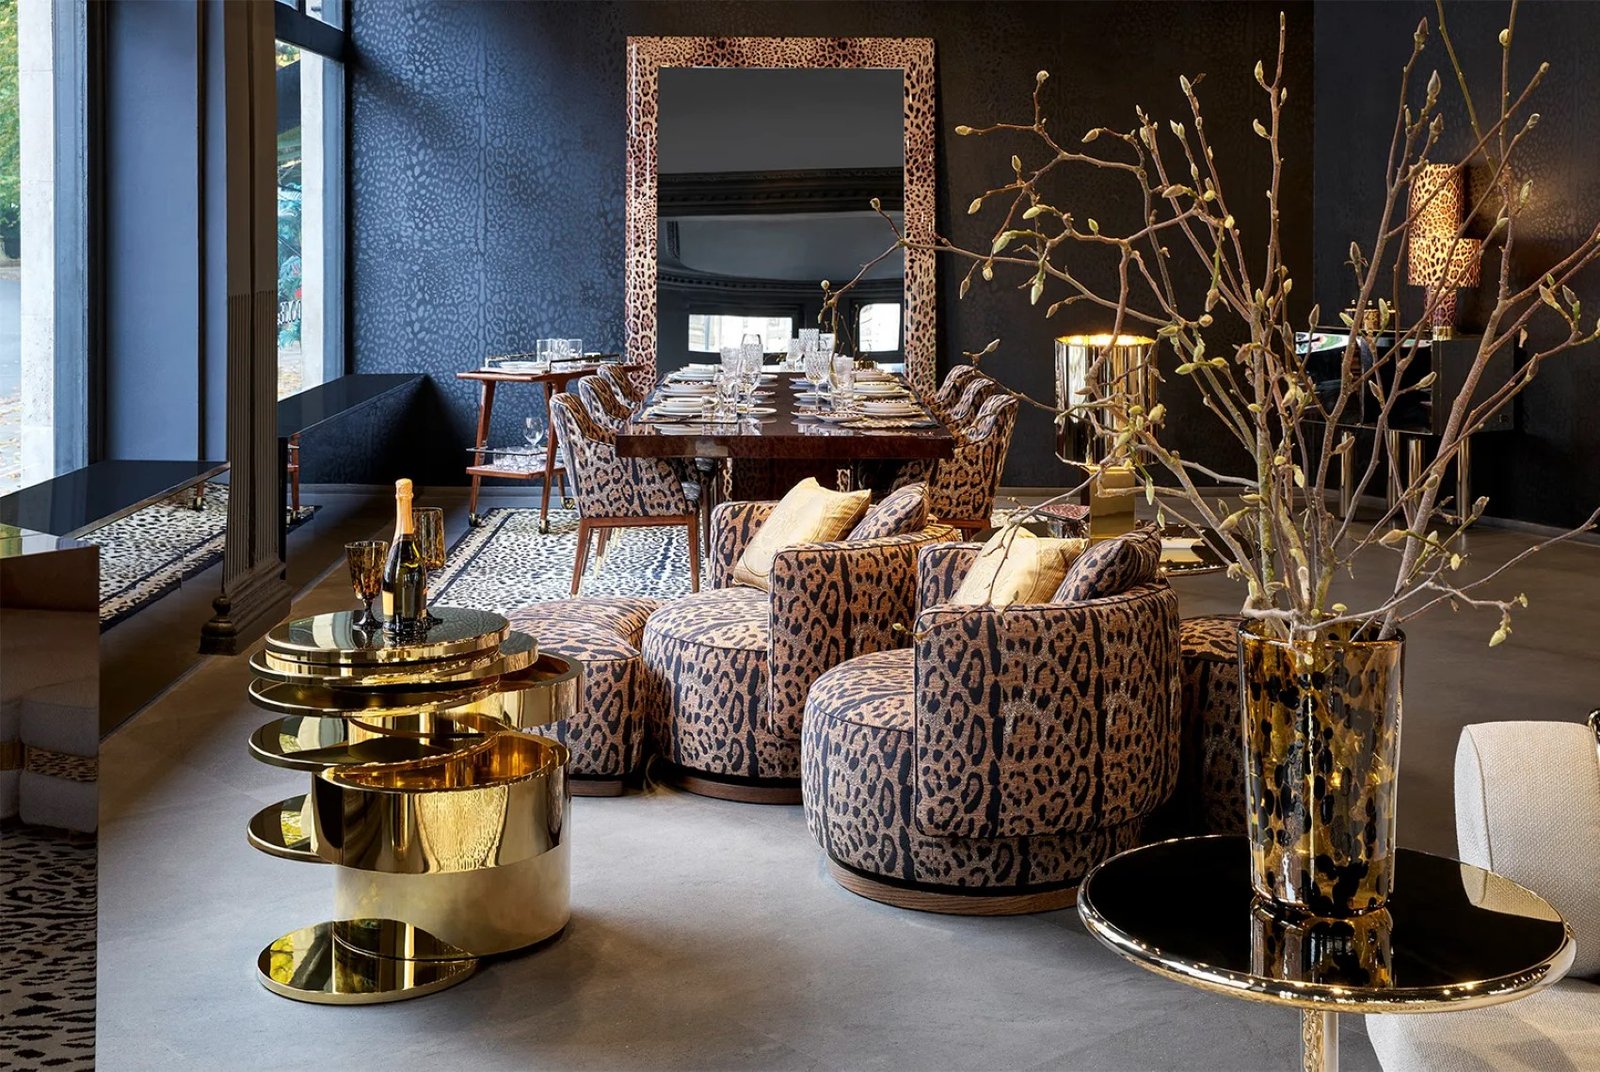 Dolce&Gabbana Casa s'étend à Londres avec deux nouvelles boutiques